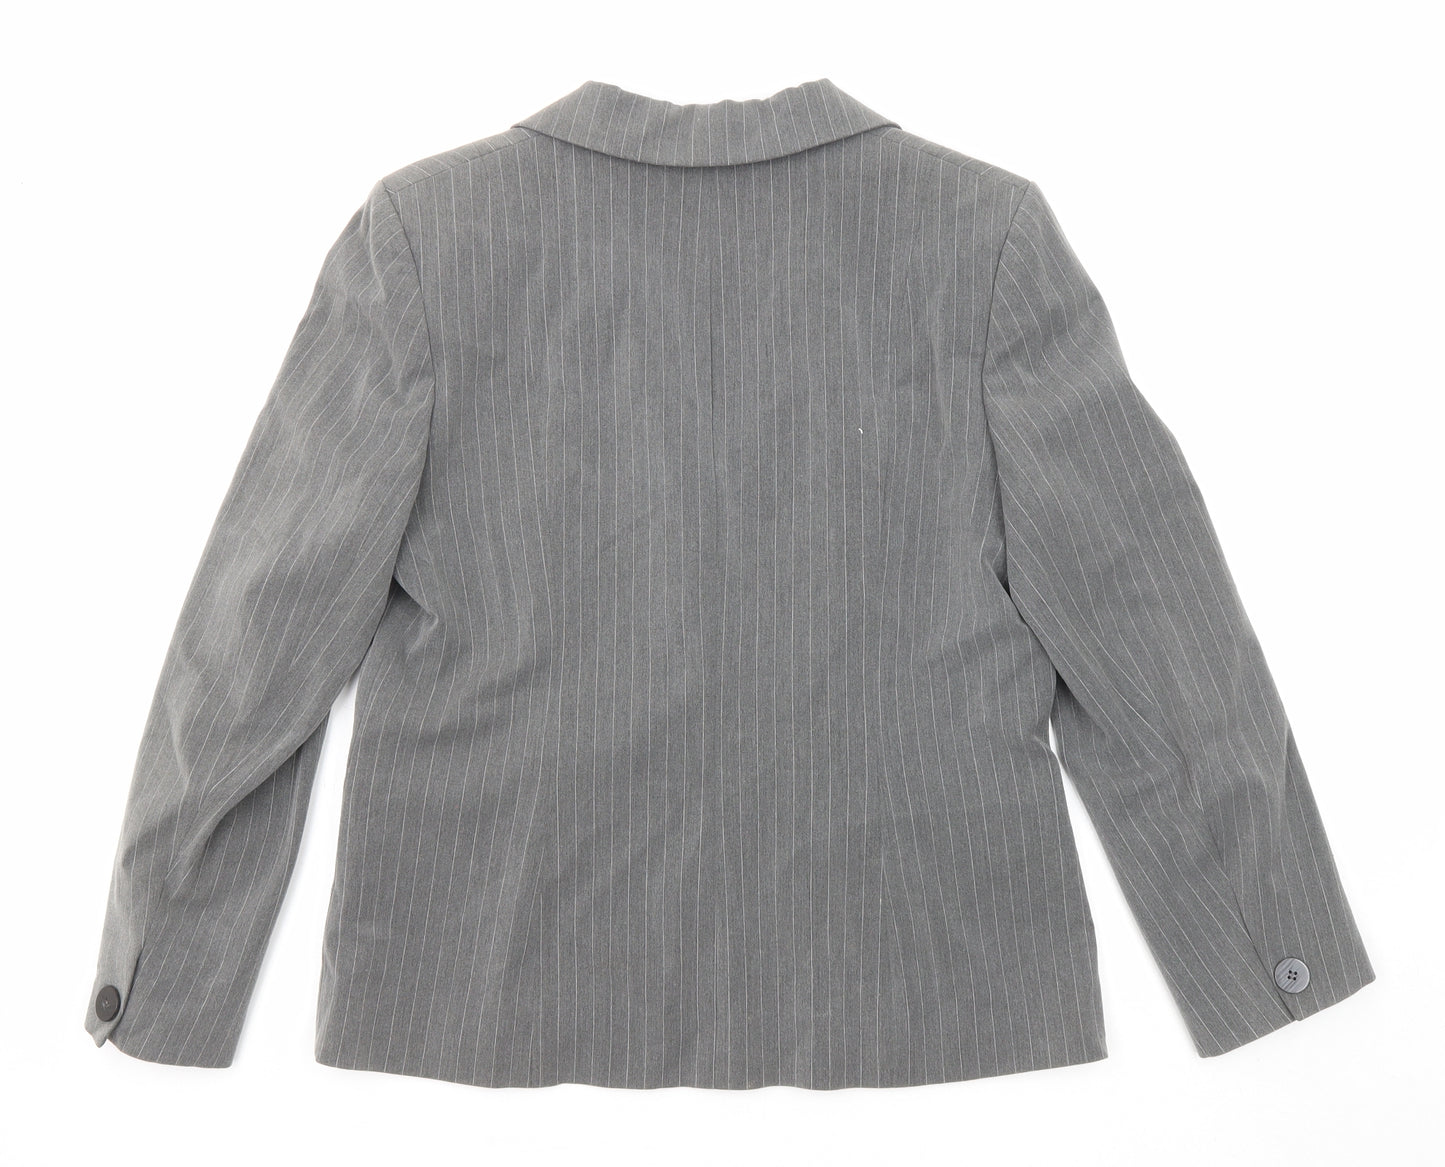 BHS Womens Grey Pinstripe Polyester Jacket Blazer Size 12